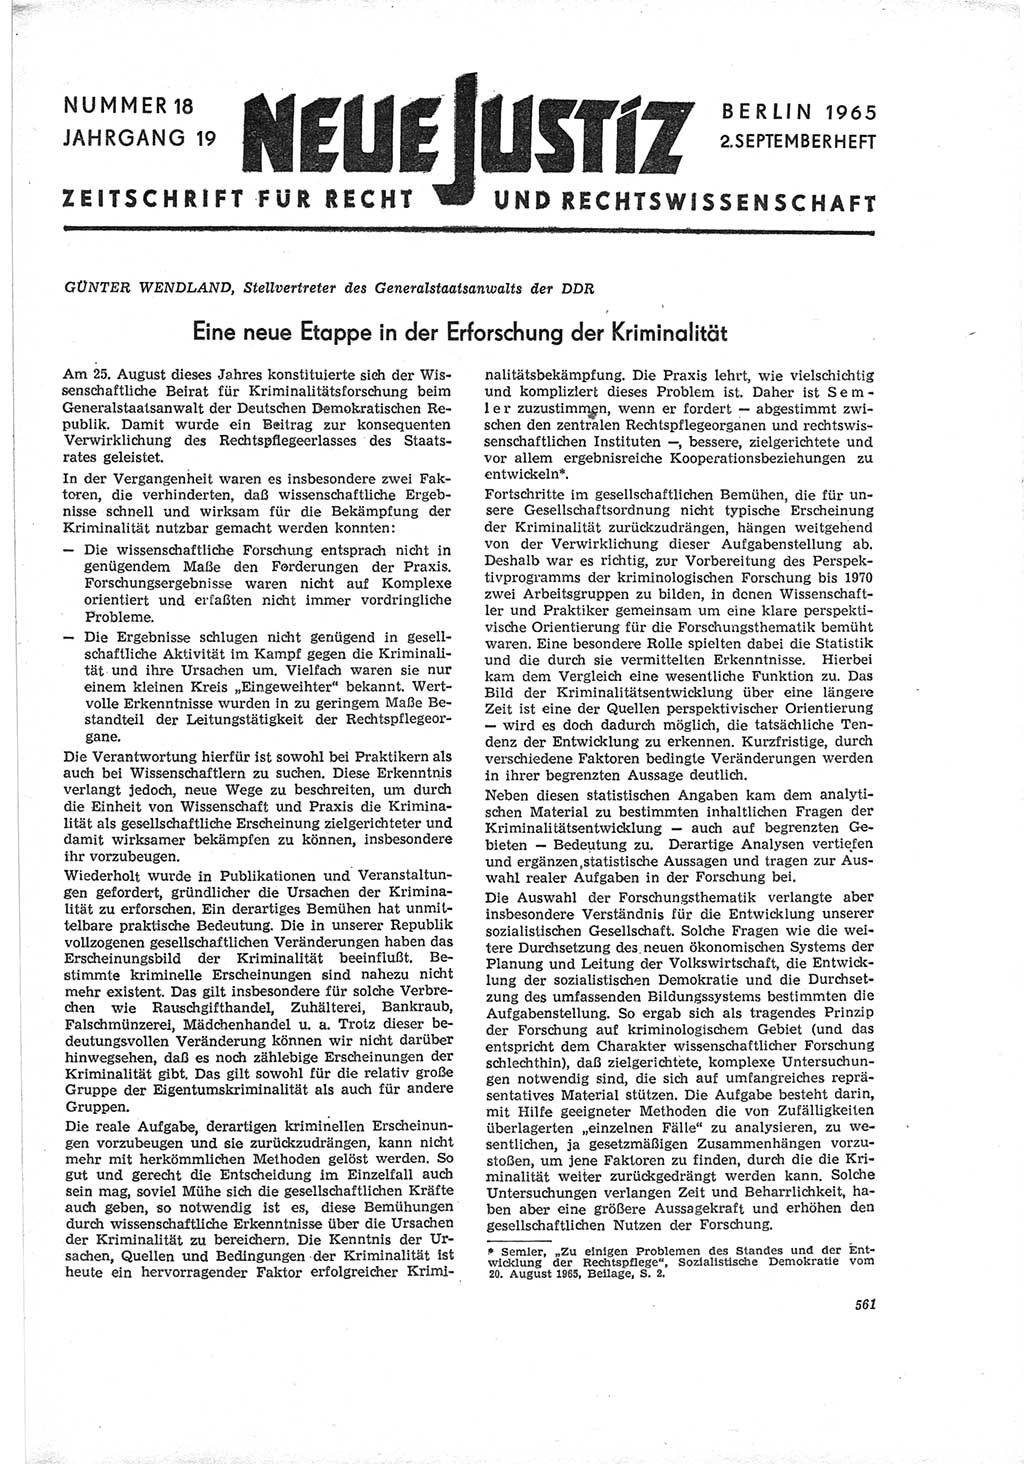 Neue Justiz (NJ), Zeitschrift für Recht und Rechtswissenschaft [Deutsche Demokratische Republik (DDR)], 19. Jahrgang 1965, Seite 561 (NJ DDR 1965, S. 561)